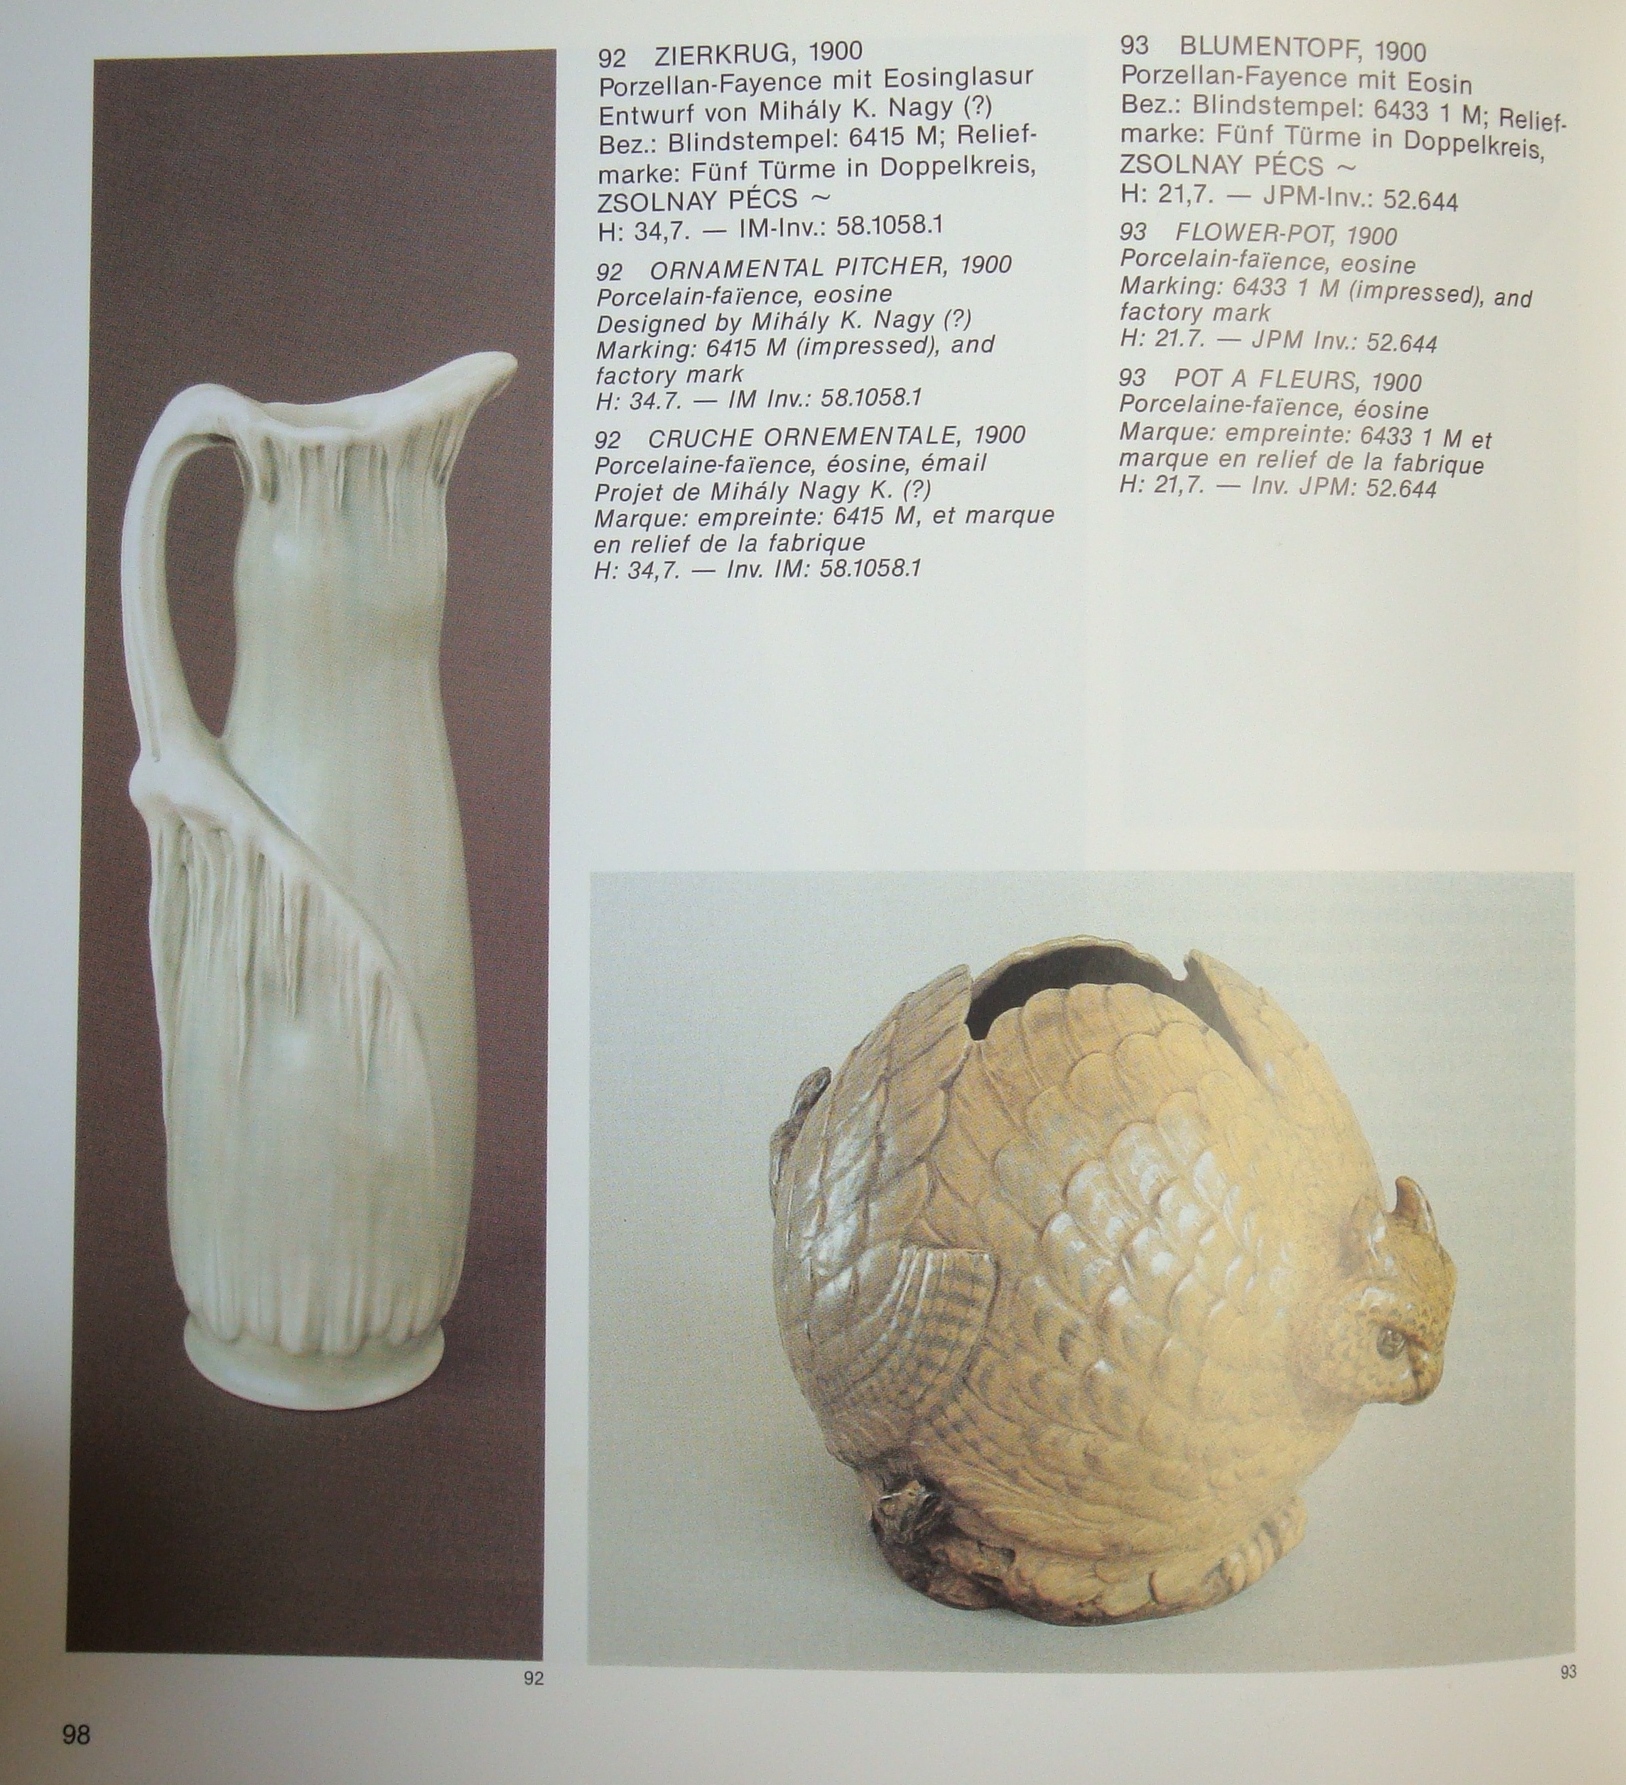 Zsolnay Owl Vase